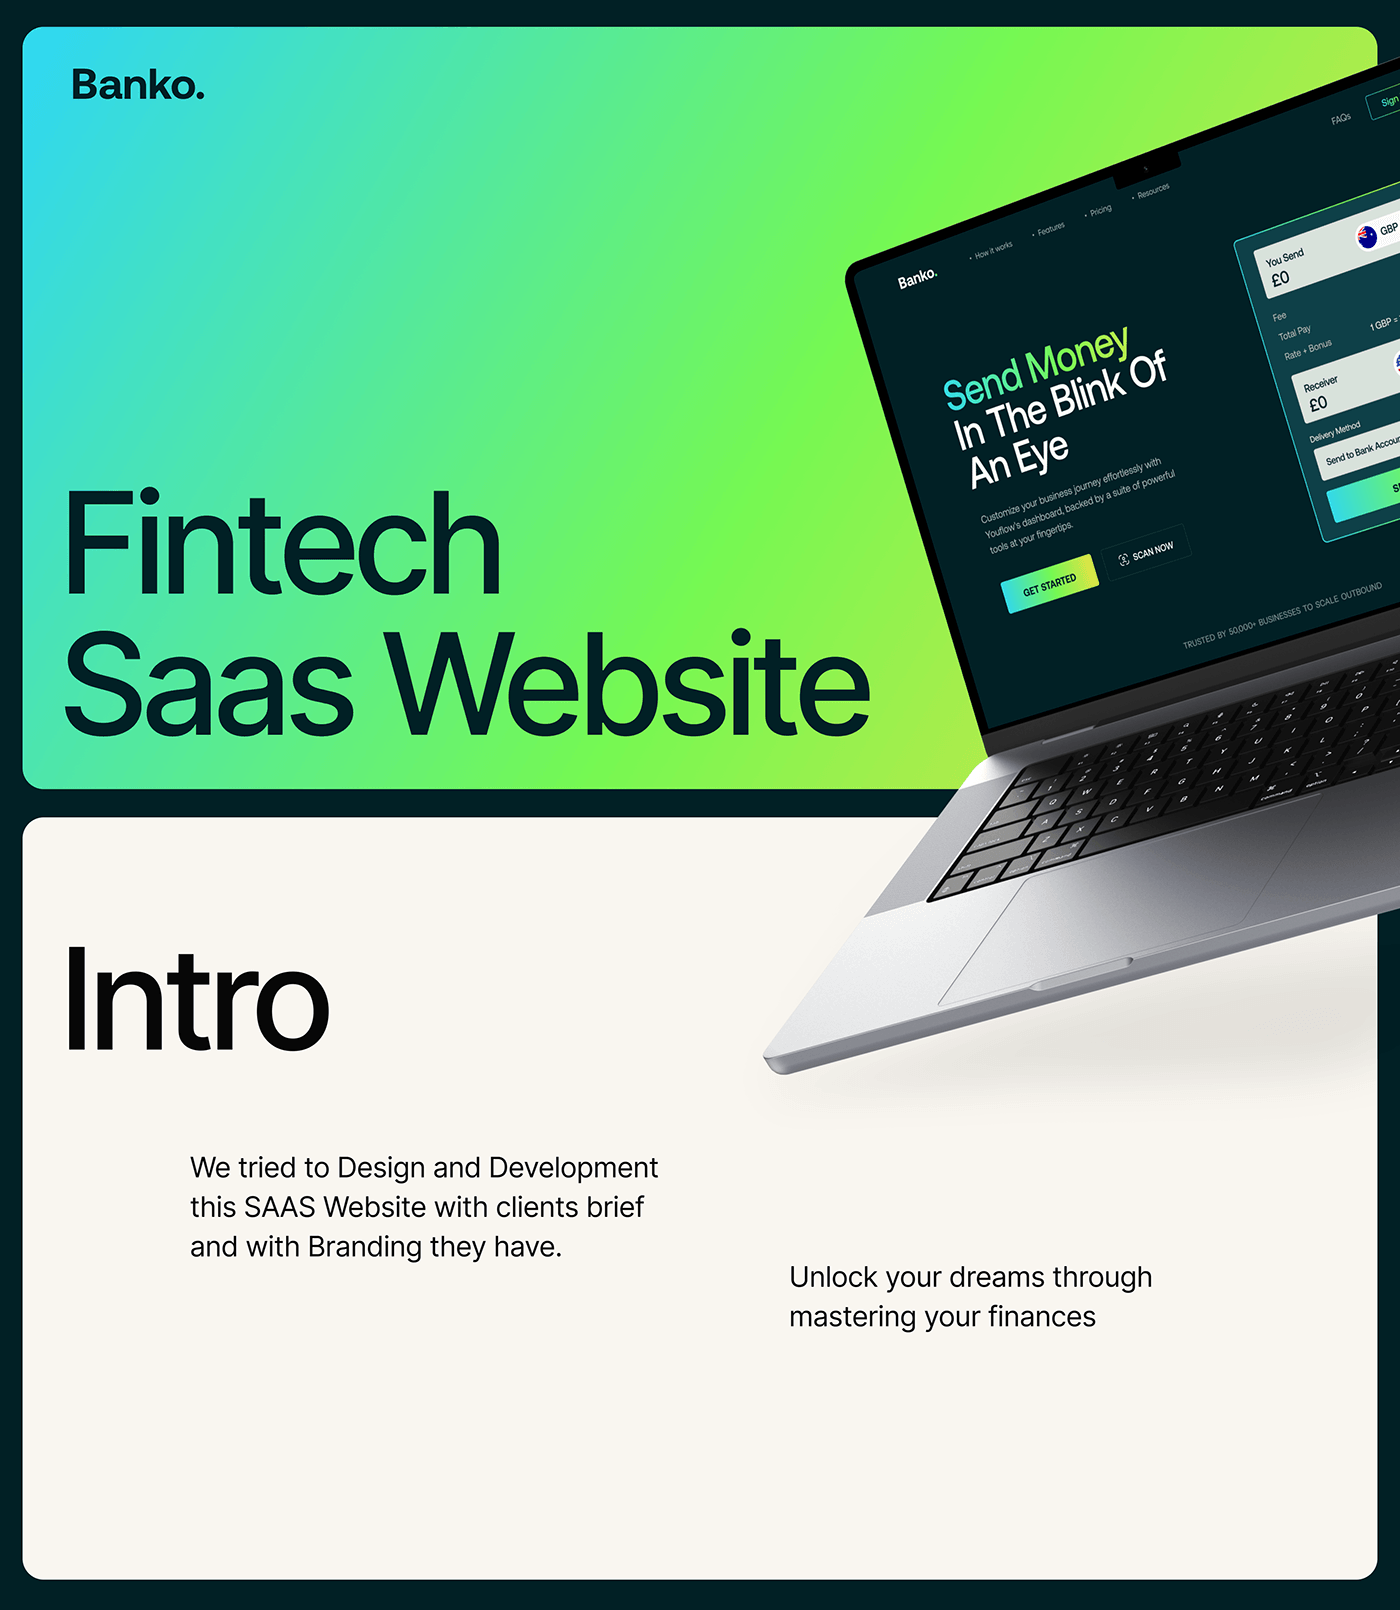 SAAS website design SAAS SaaS Website finance finance website fintech website Fintech SaaS saas landing page